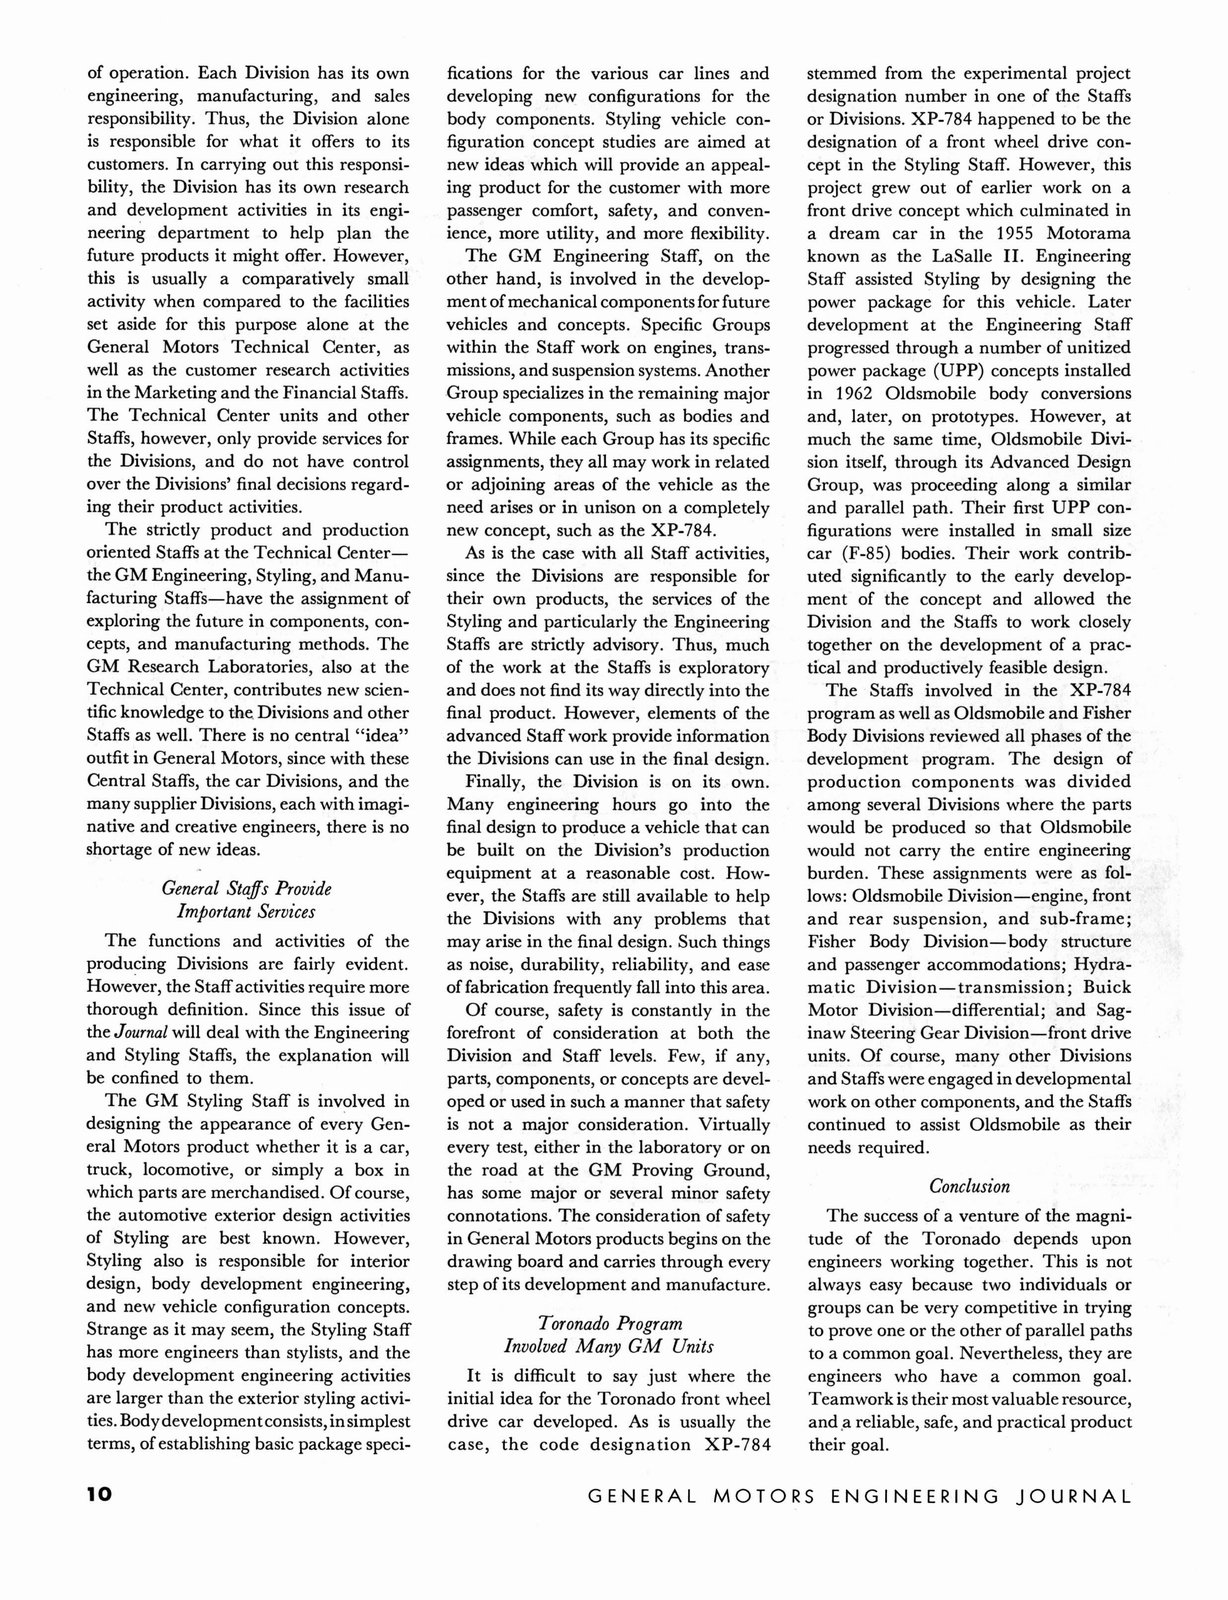 n_1966 GM Eng Journal Qtr1-10.jpg